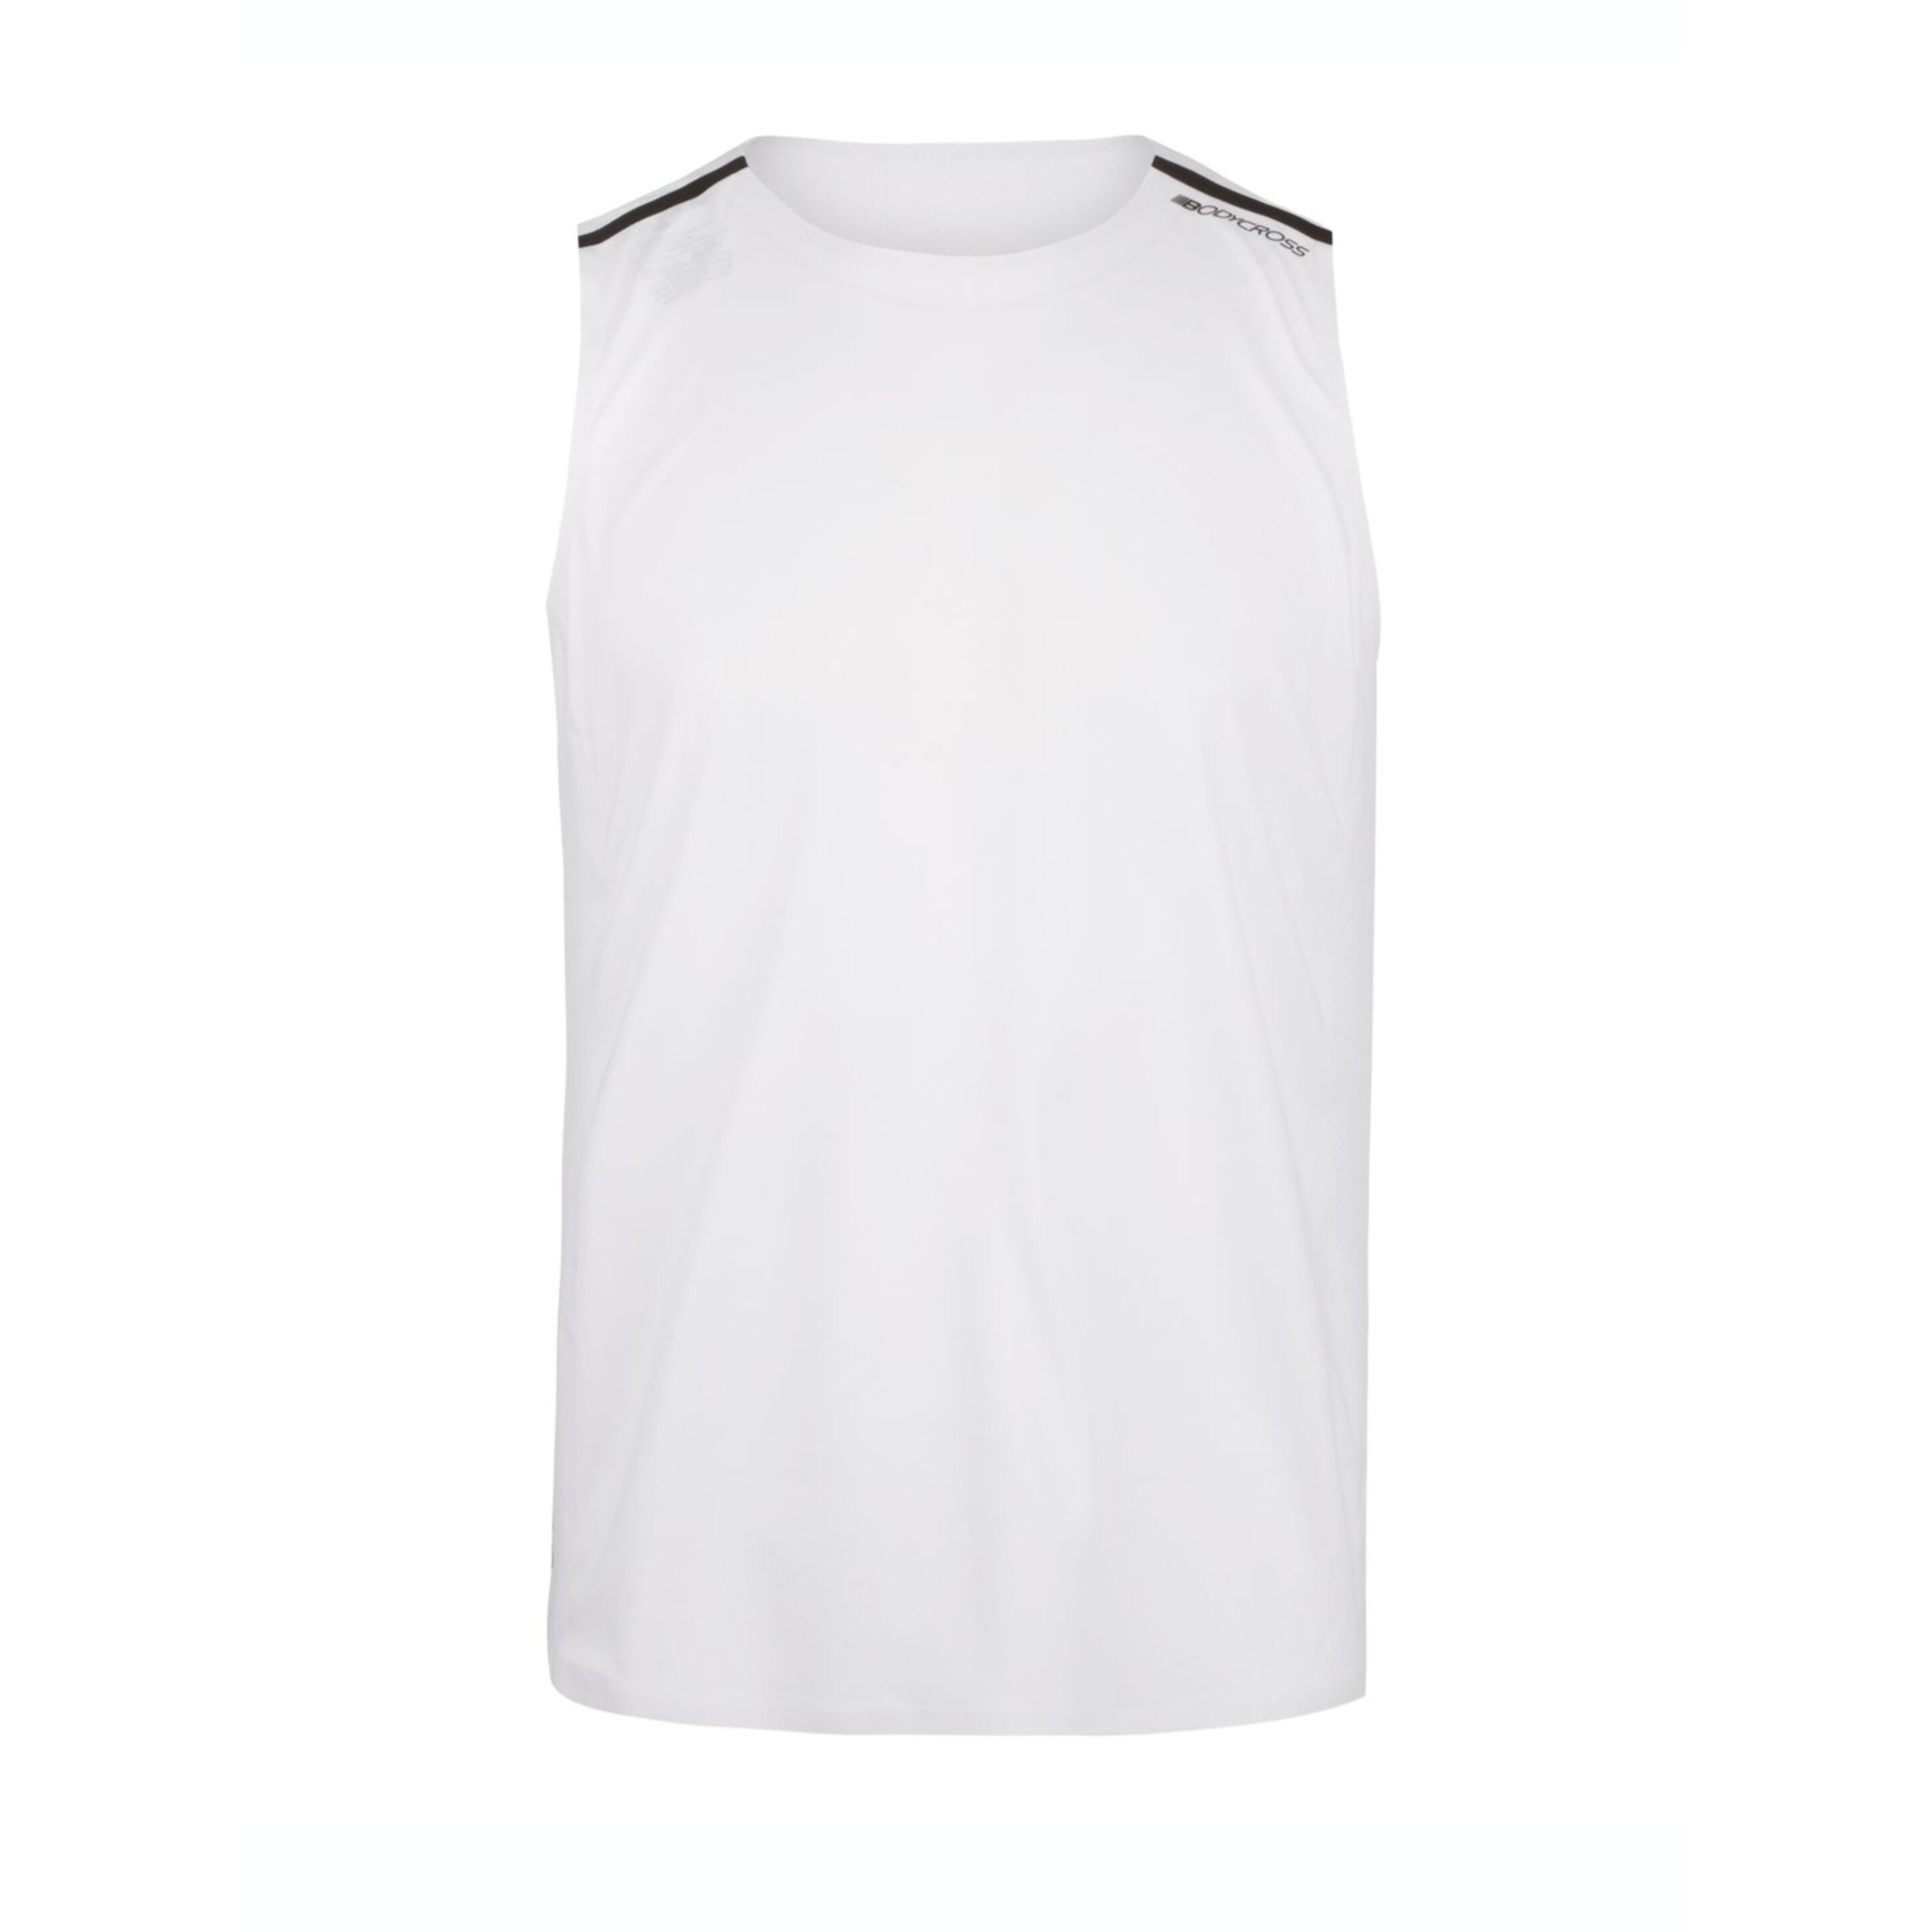 Camiseta Bodycross Orwen - blanco - 